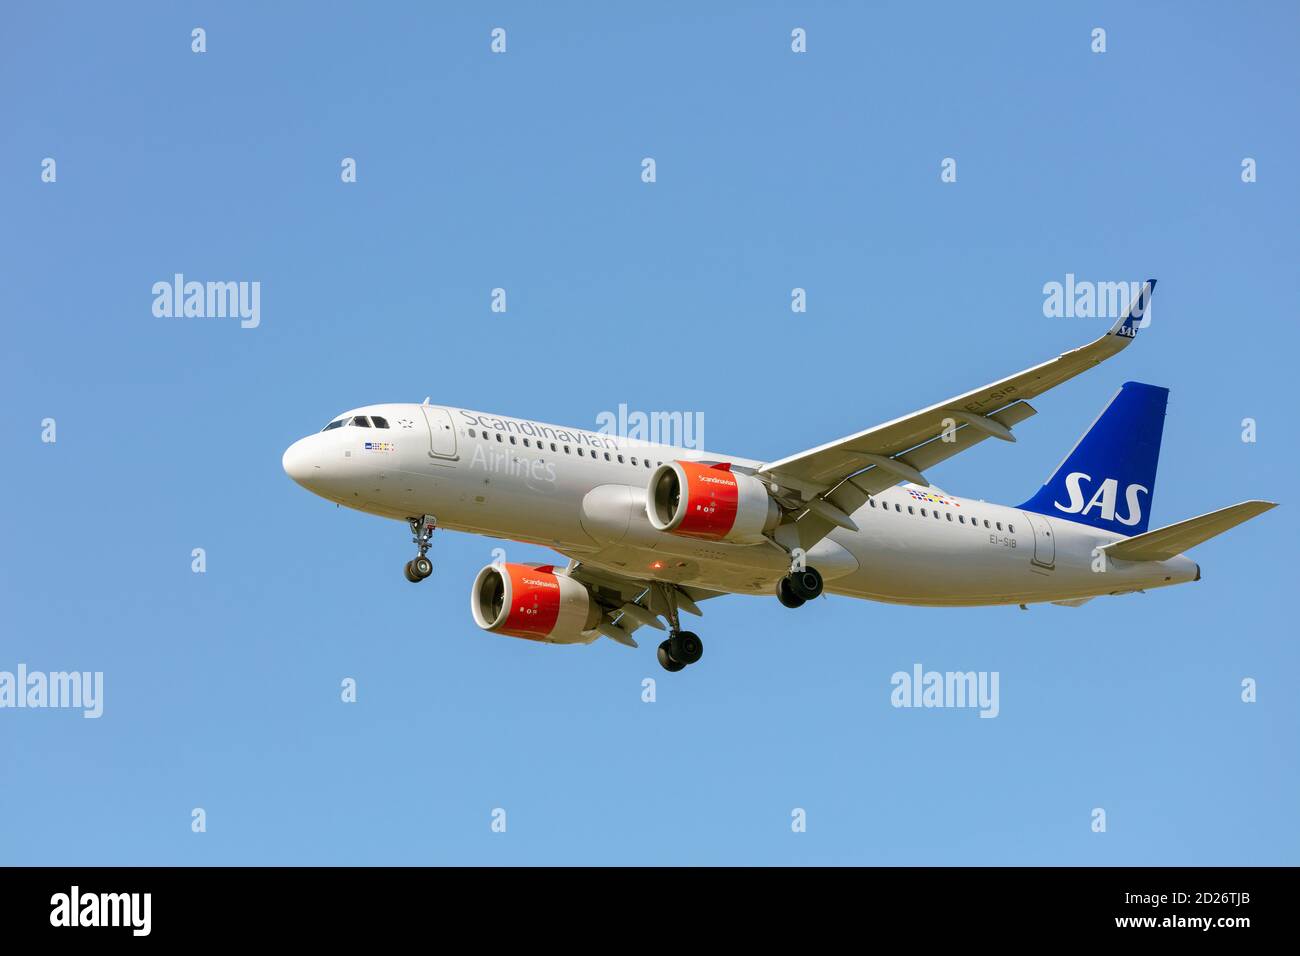 SAS Scandinavian Airlines Airbus A320-251N mit Fahrwerk nach unten. Stockfoto